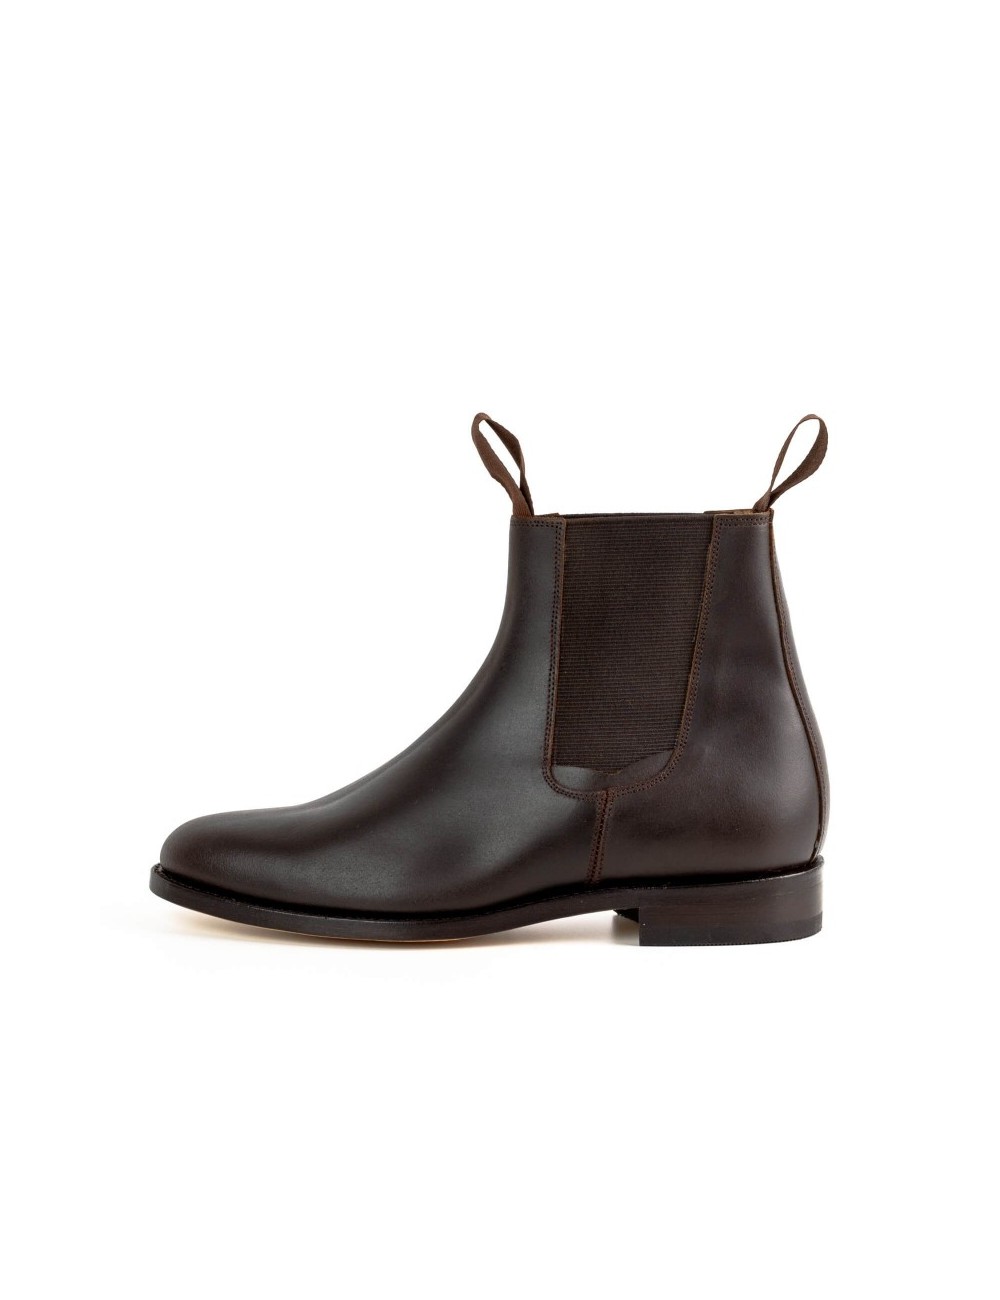 Boots chelsea cuir noir artisanales - Accessoires pour chaussures